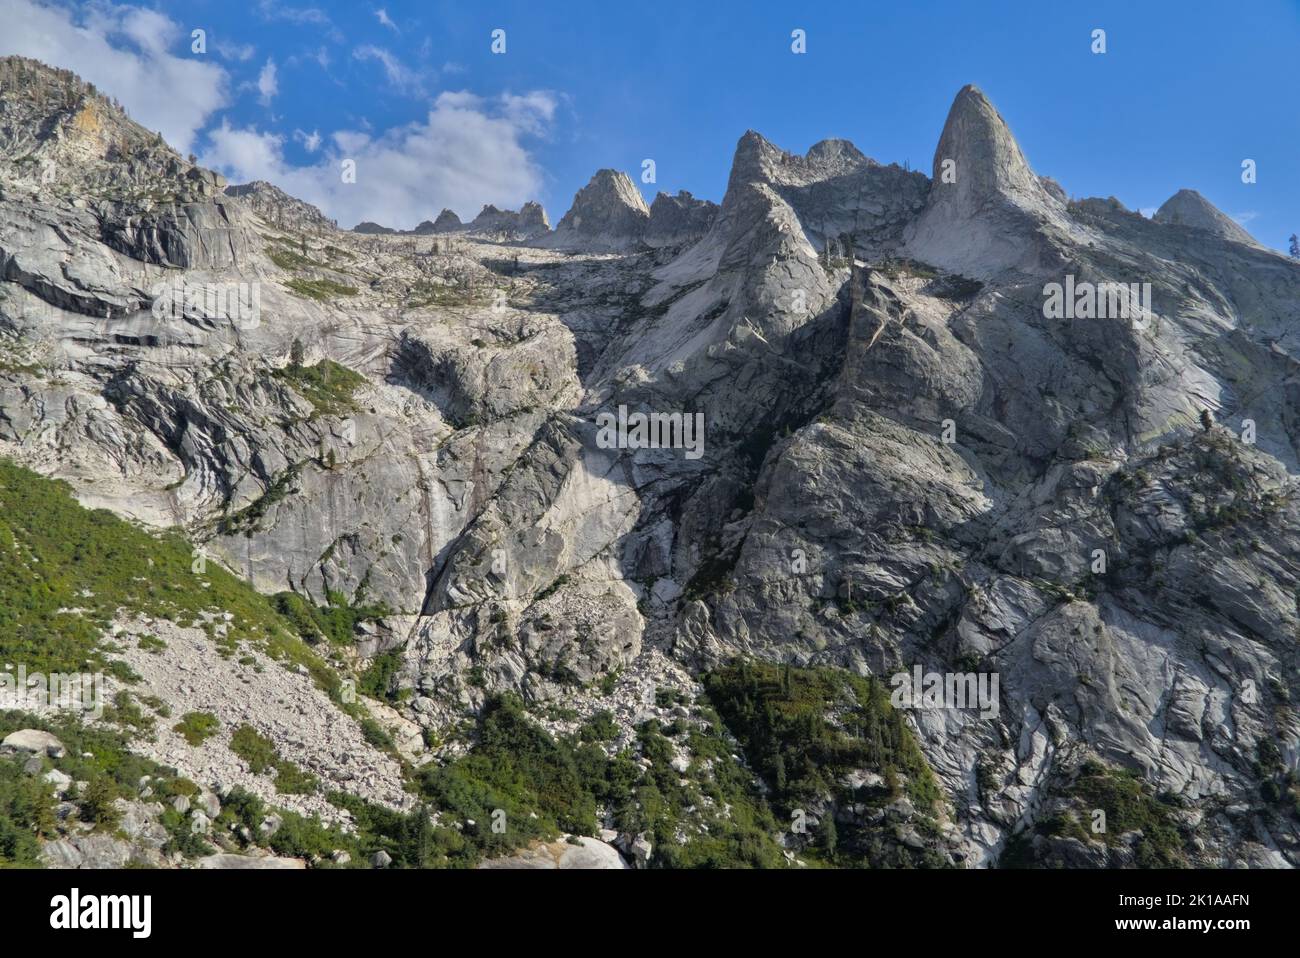 Montagne en granit blanc avec alpins le long du sentier High Sierra. Banque D'Images